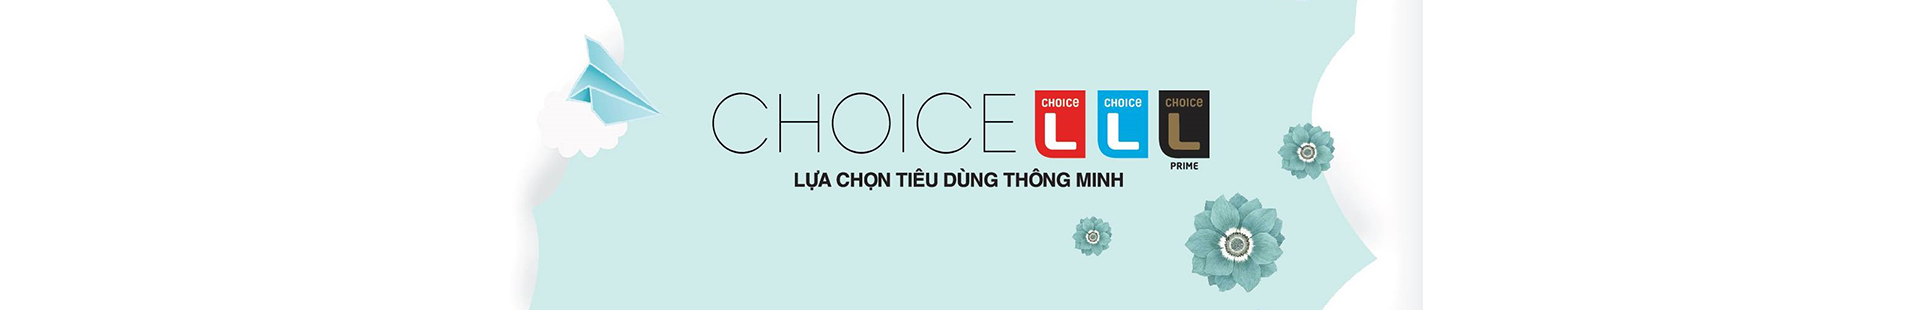 Choice L